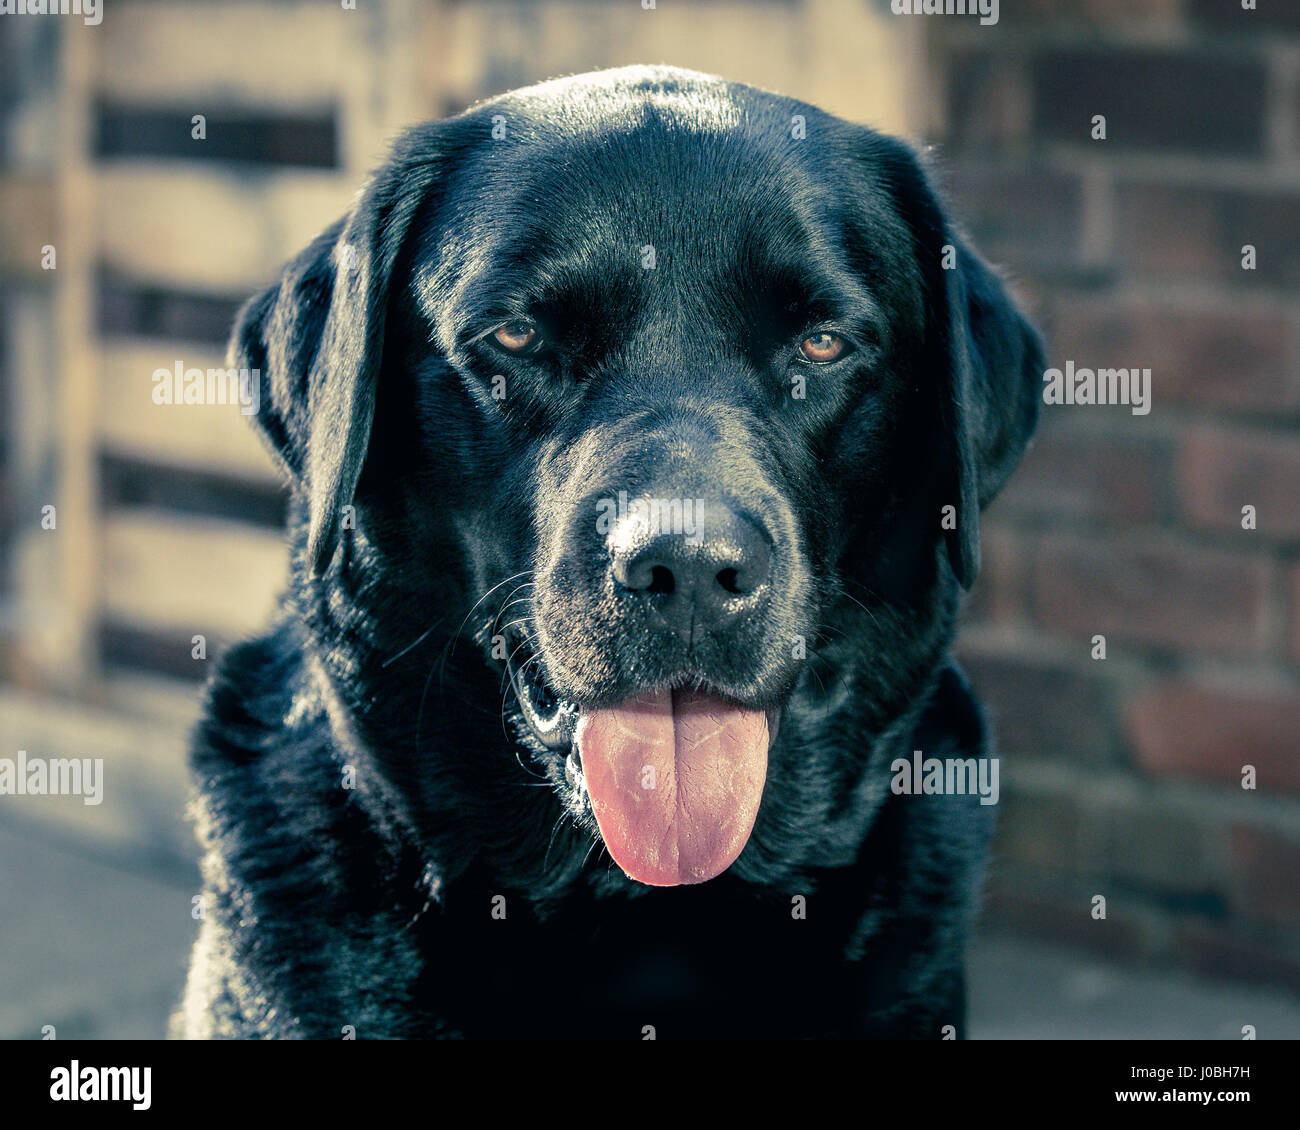 A smiling Black Labrador Retriever dog Stock Photo